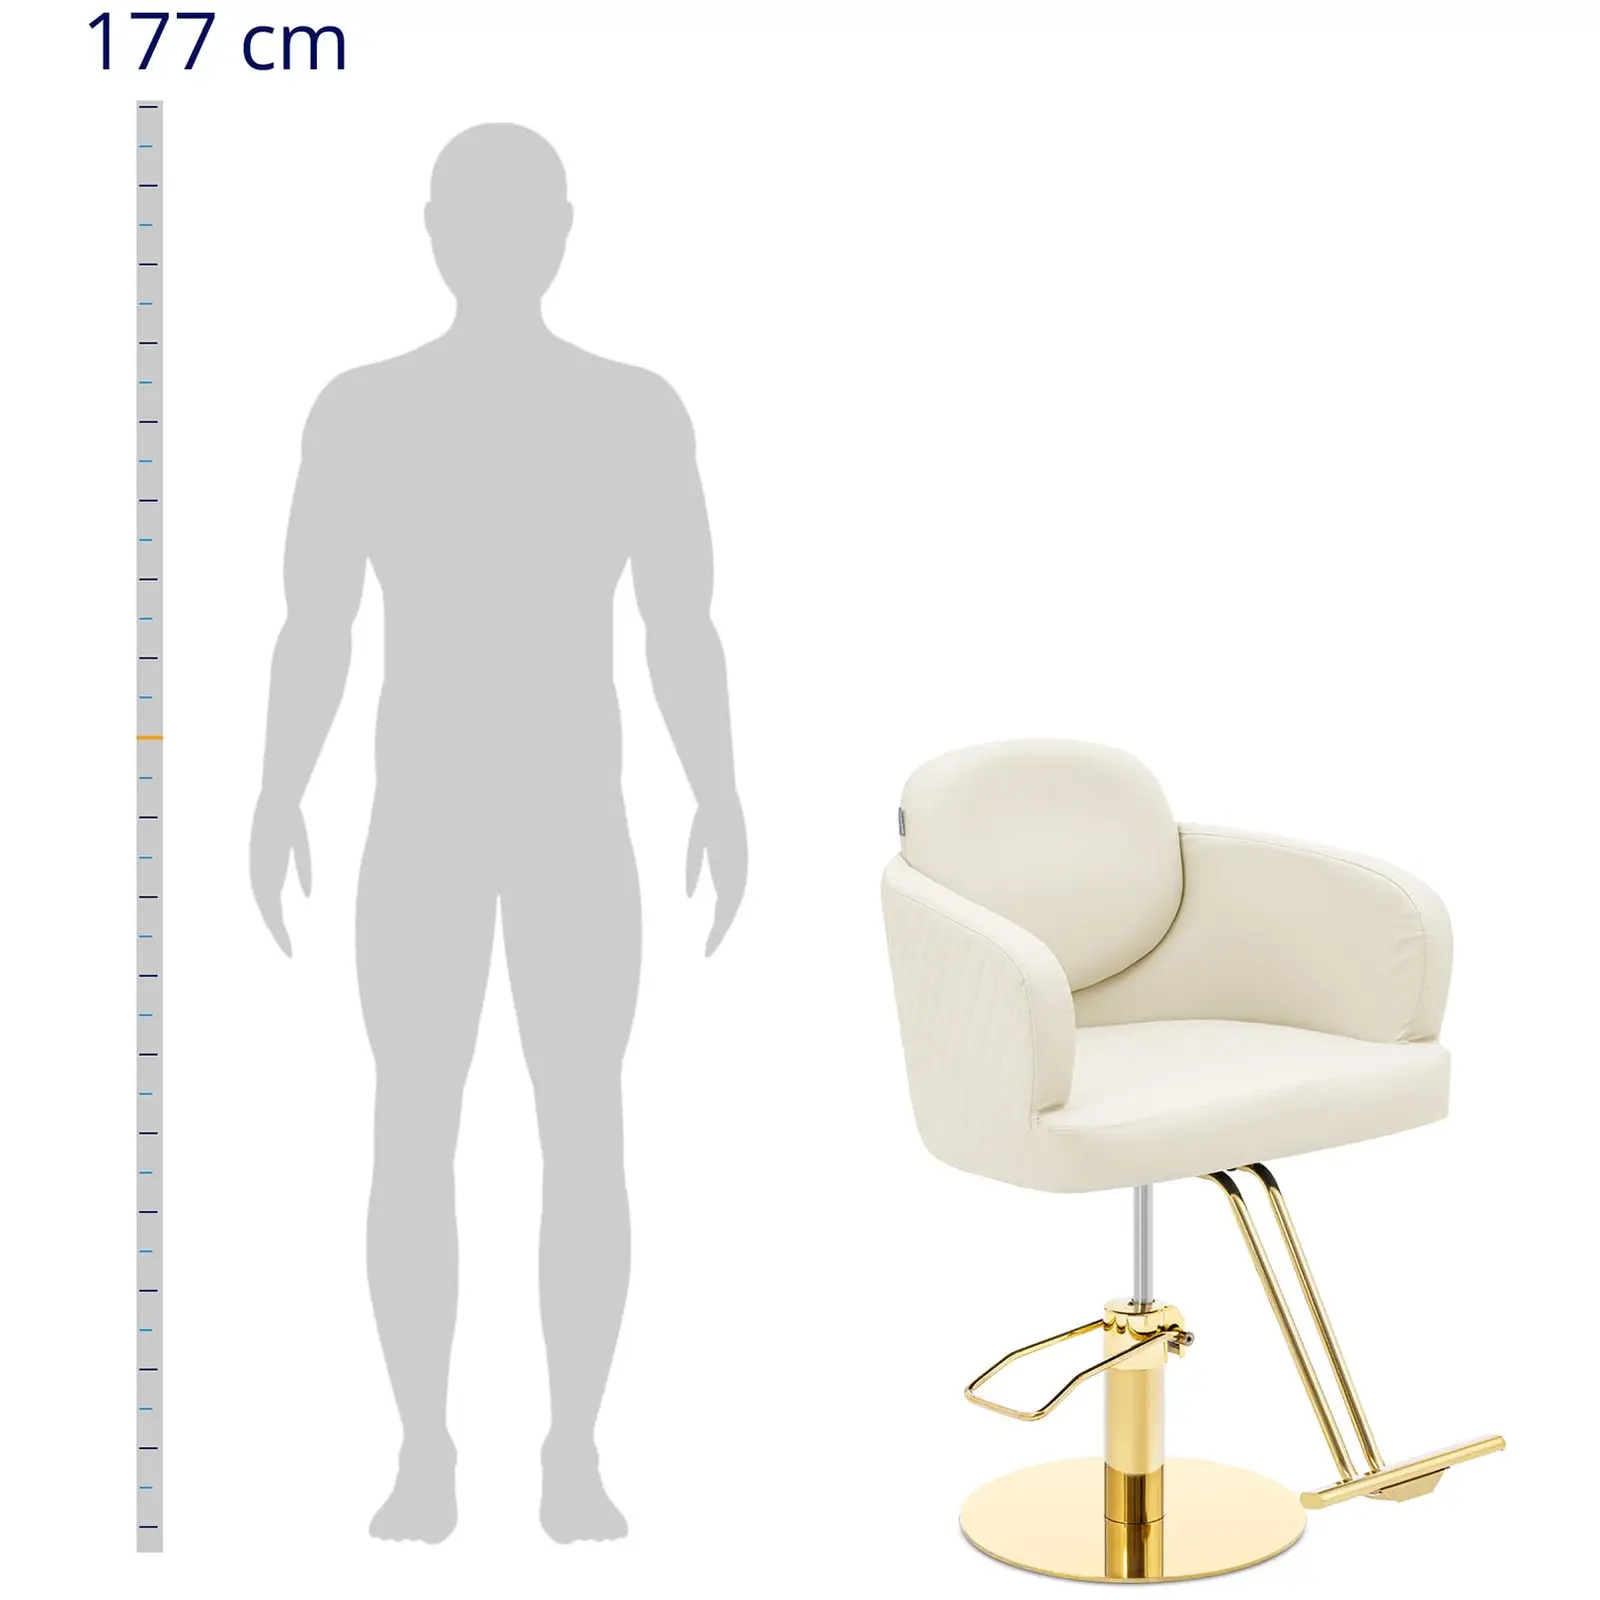 Salono kėdė su atramomis kojoms - 870 - 1020 mm - 200 kg - kreminė / auksinė